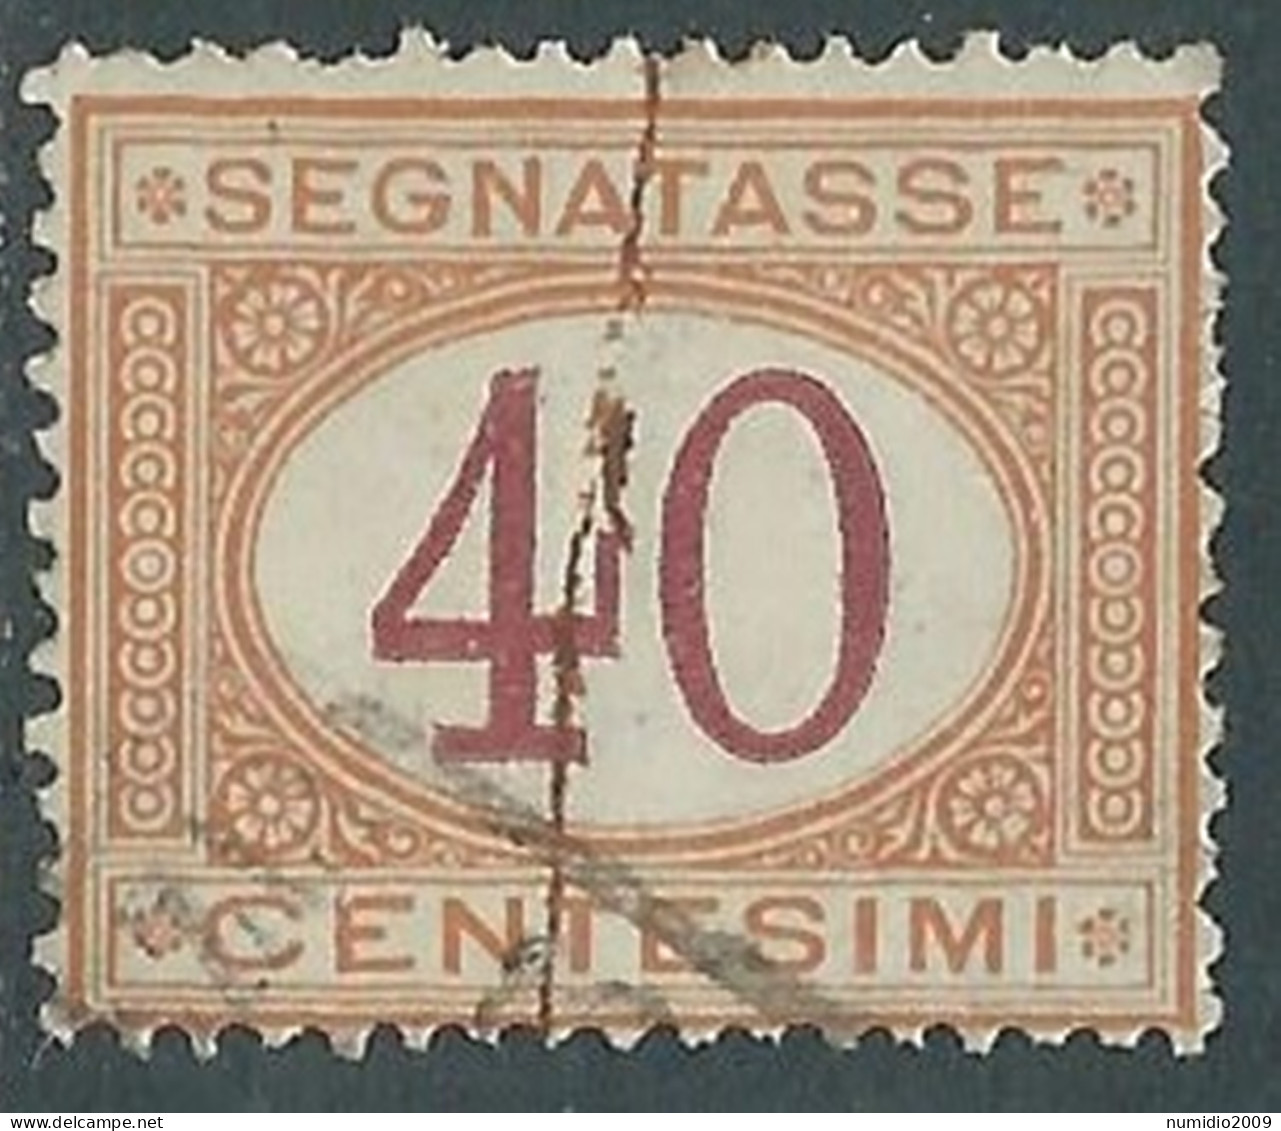 1890-94 REGNO SEGNATASSE USATO 40 CENT VARIETà RIGA COLORE - RC33 - Impuestos